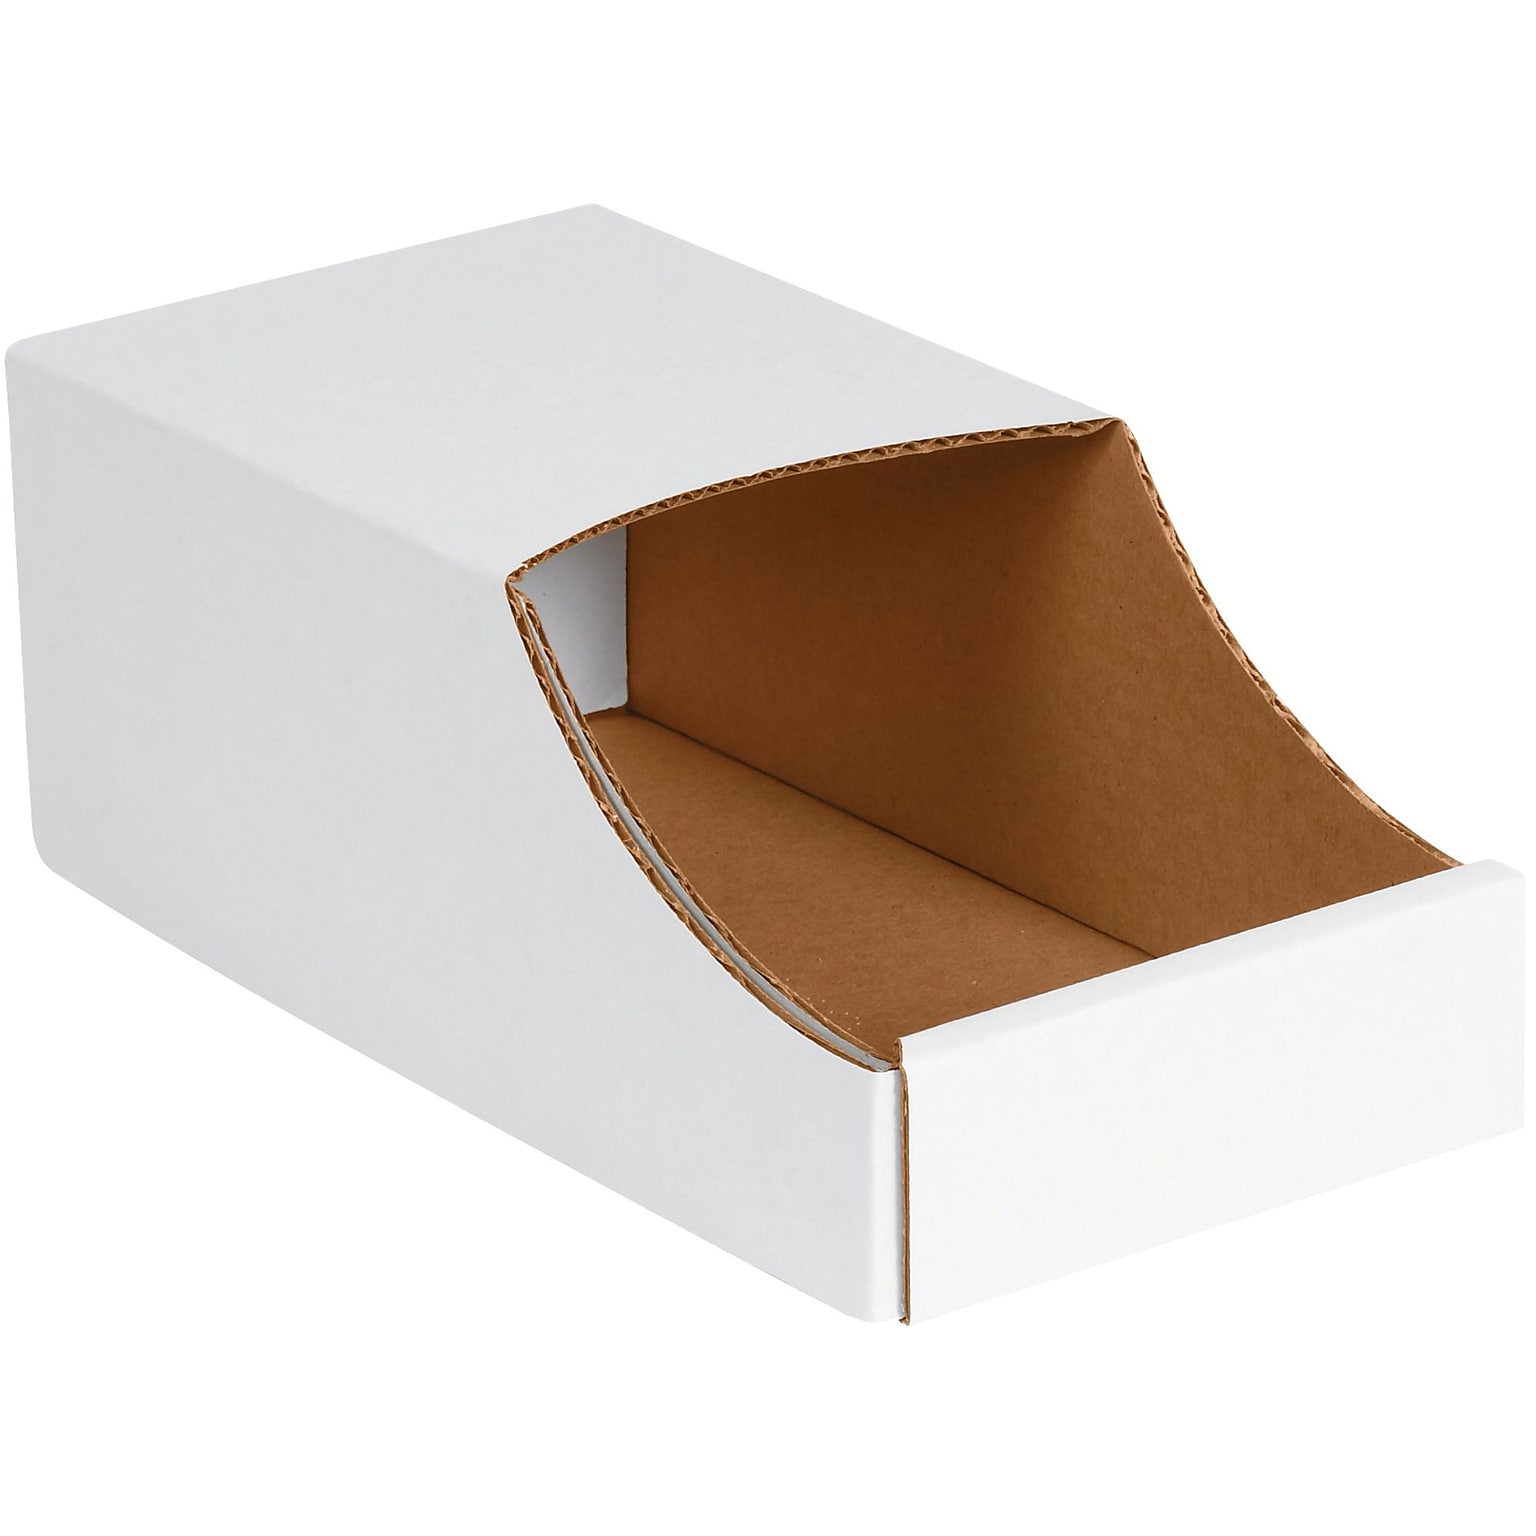 BOX 6 x 12 x 4 1/2 Stackable Bin Boxes, White, 50 Pack (BINB612)